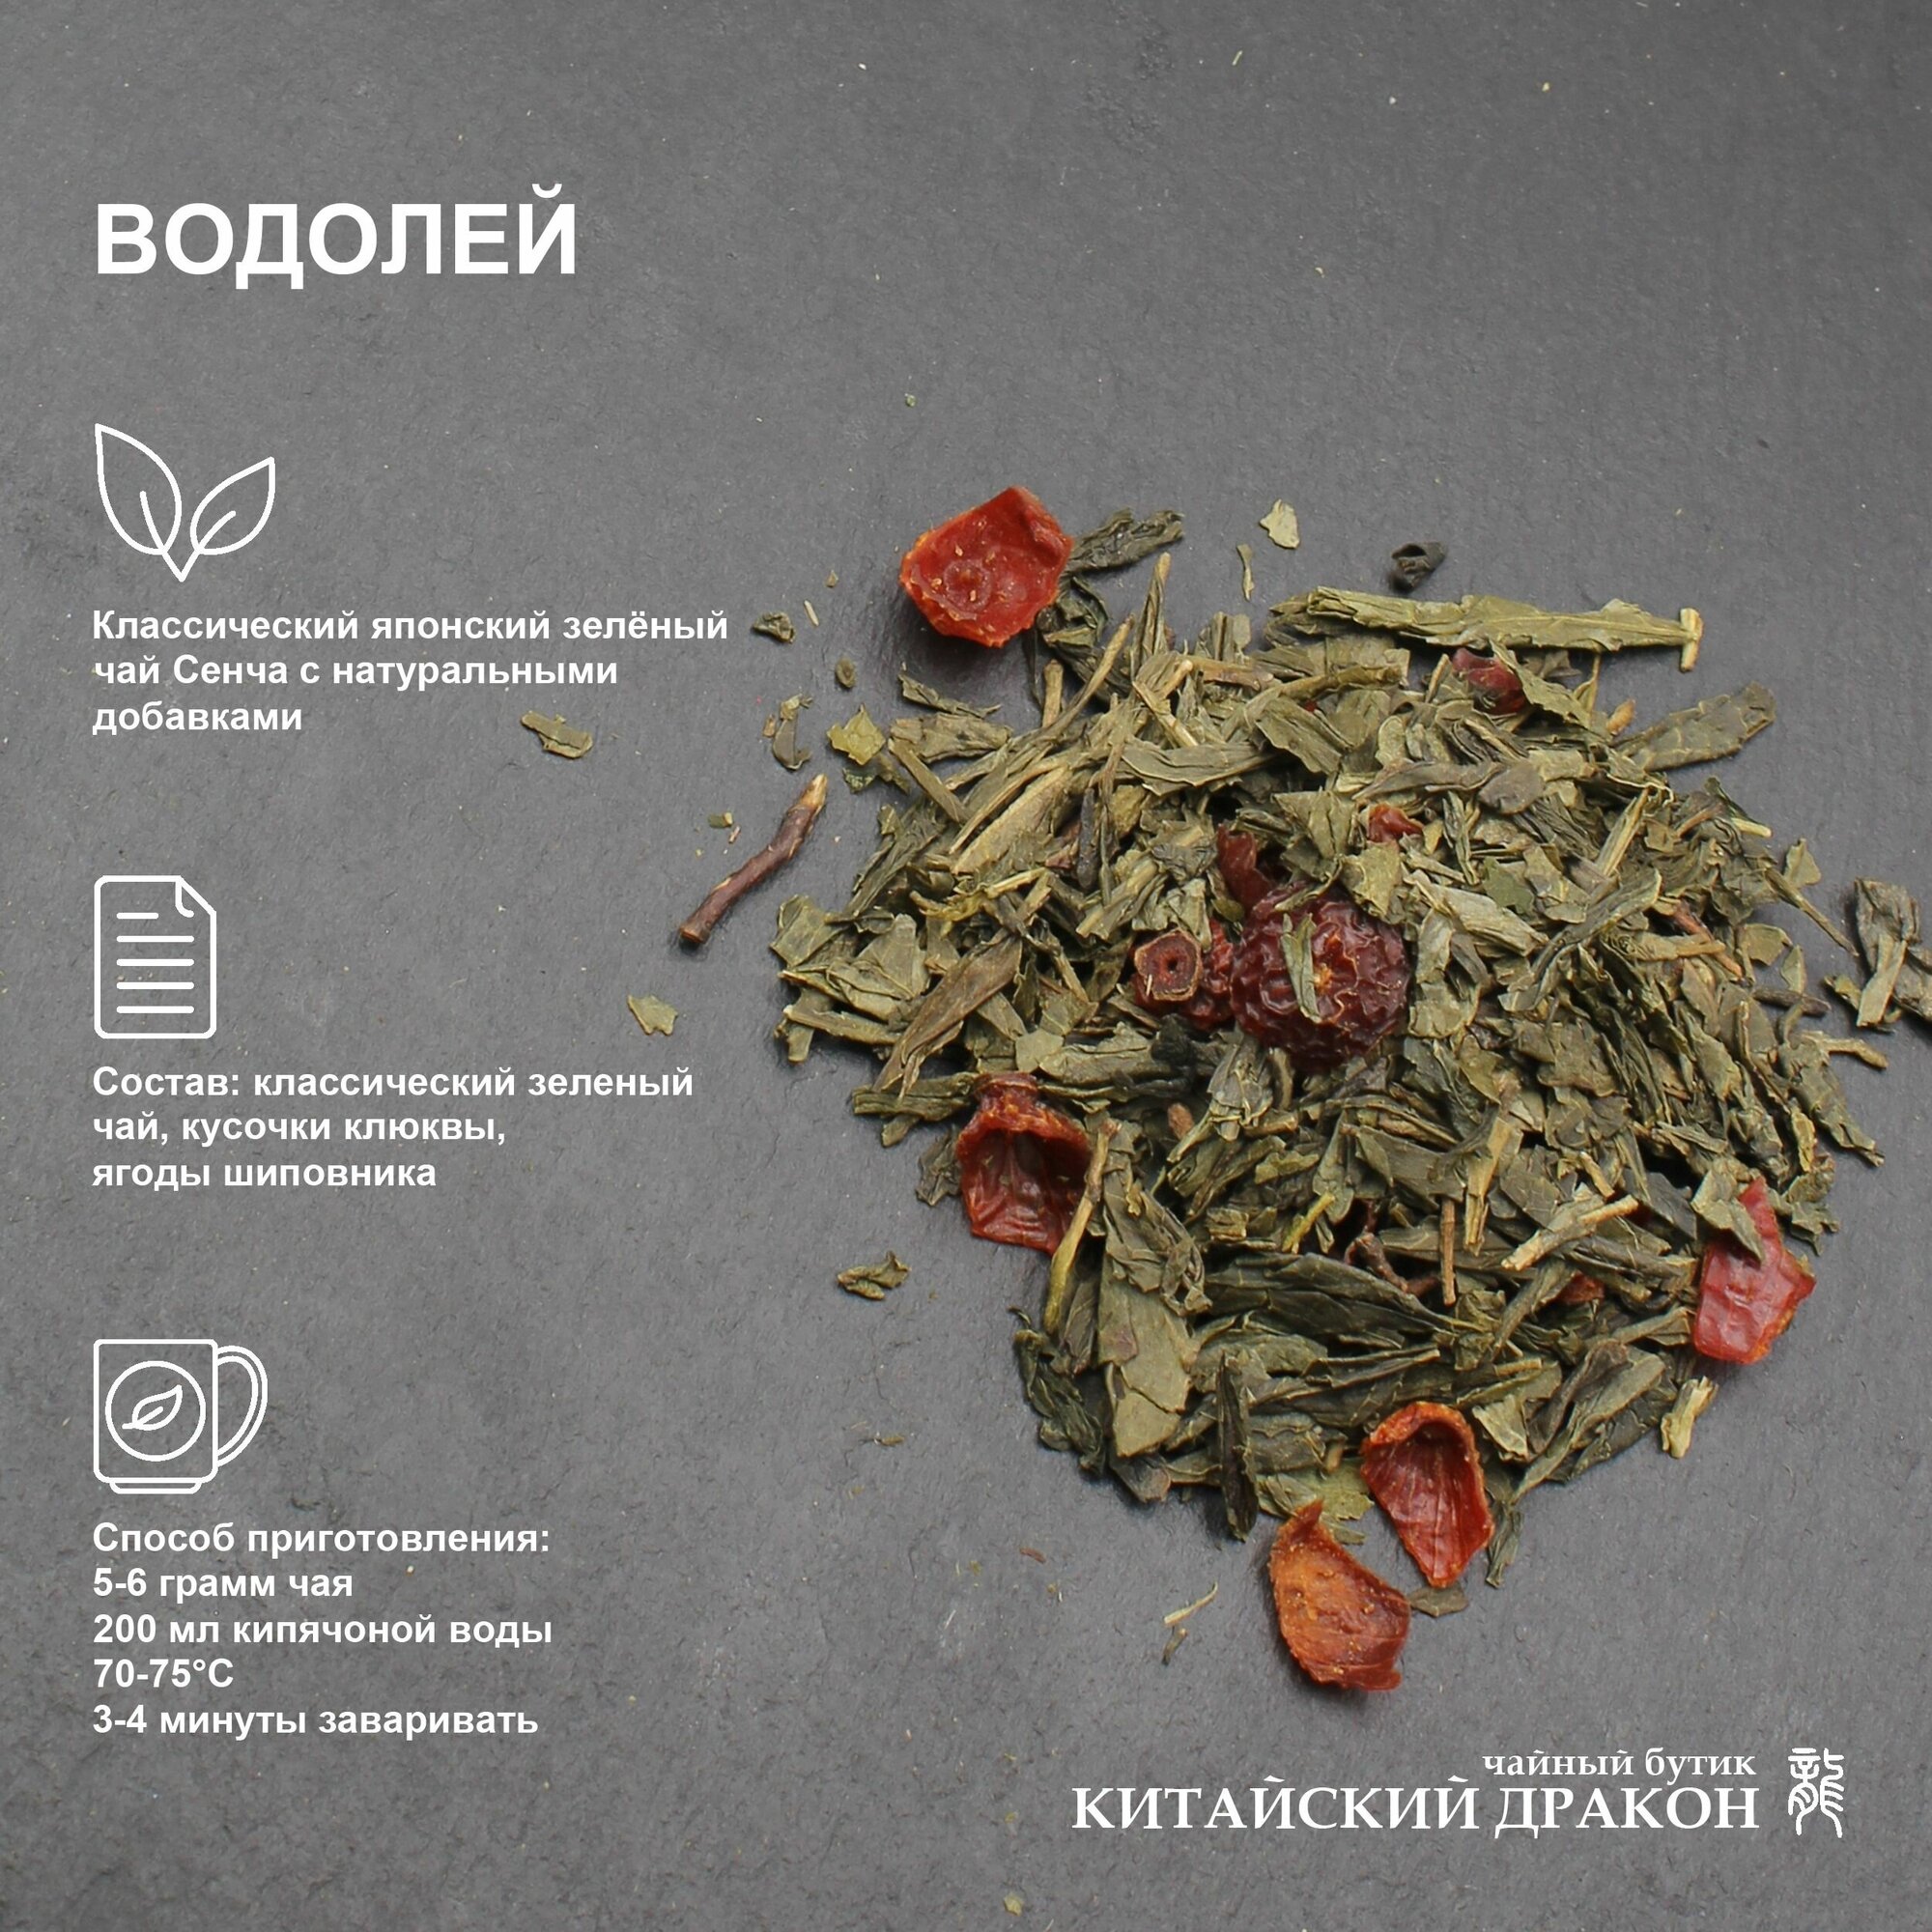 Подарок для Водолея чай зеленый Китайский дракон, коллекция "Знаки зодиака", "Водолей", 100 г, с добавлением кусочков клюквы и шиповника